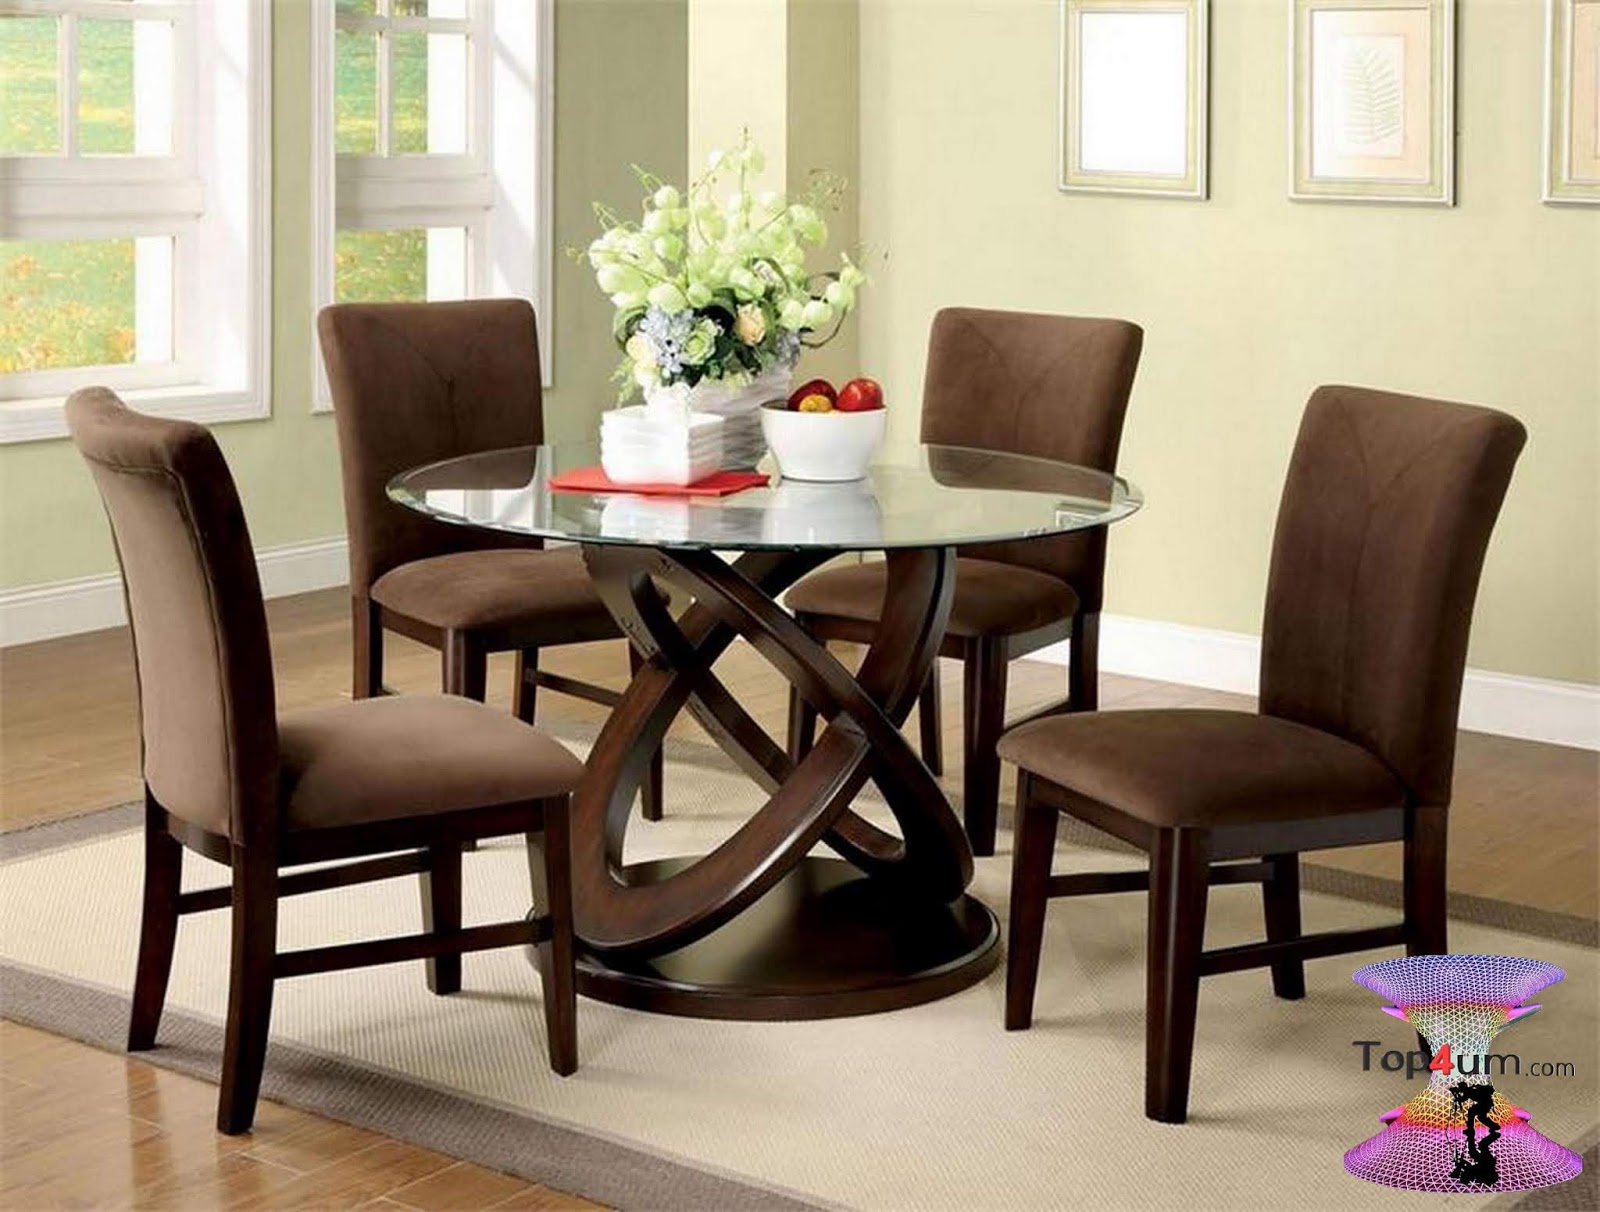 Красивый обеденный стол. Стол обеденный ORDT-d6060-SPR. Стул Dining Chair. Стол со стульями в гостиную. Столы и стулья в интерьере.